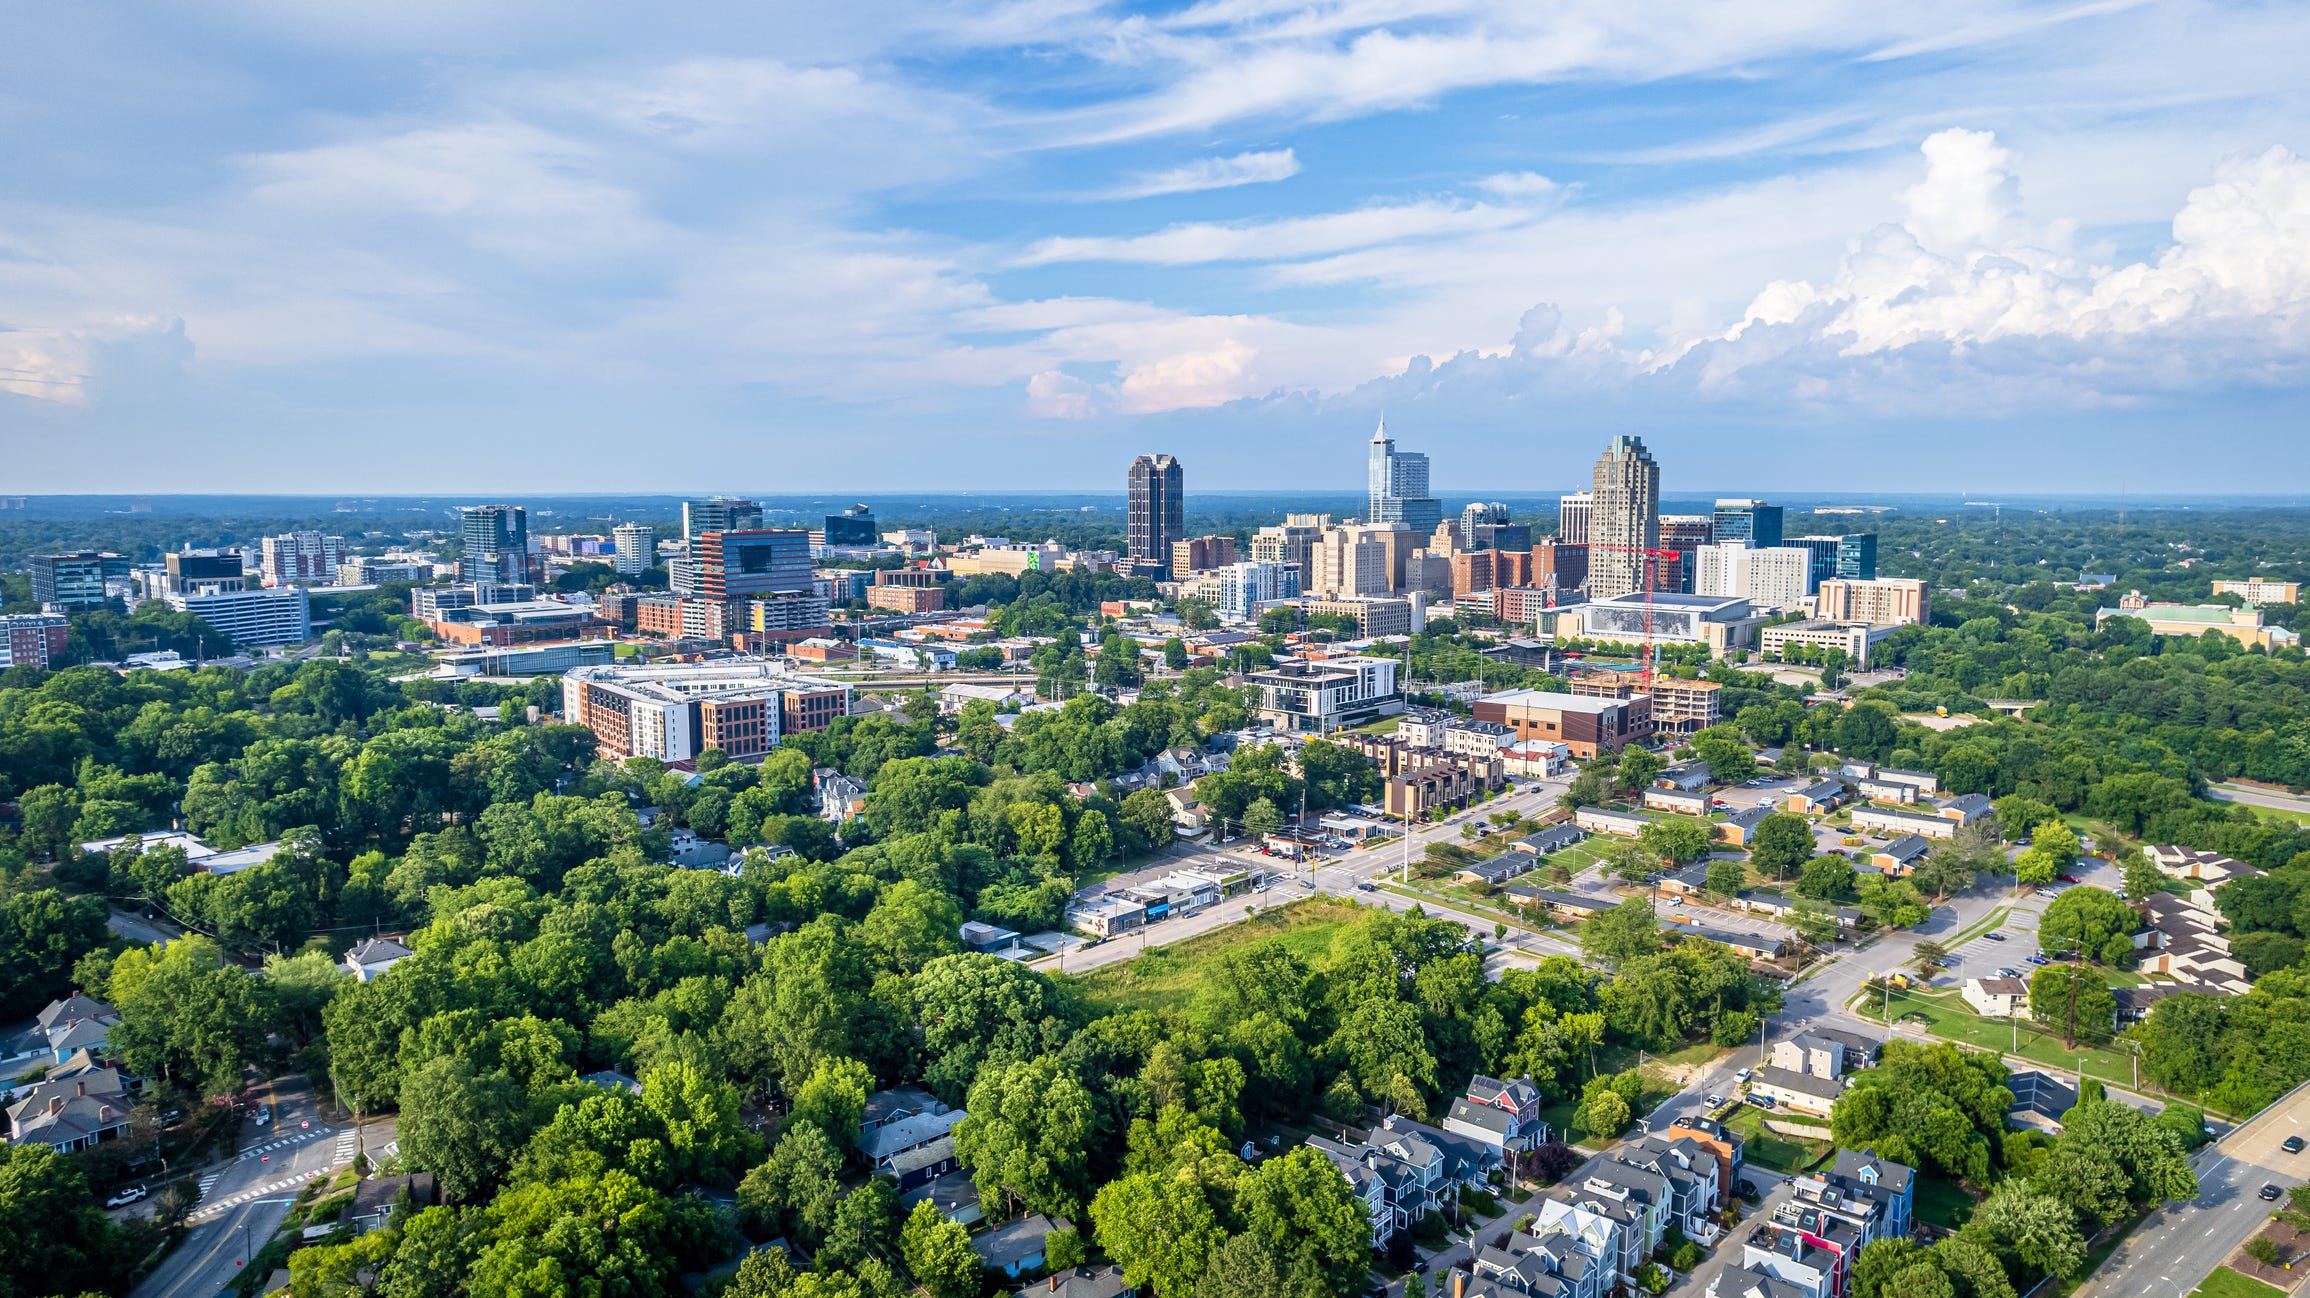 Blick auf die Innenstadt von Raleigh, North Carolina mit blauem Himmelshintergrund.